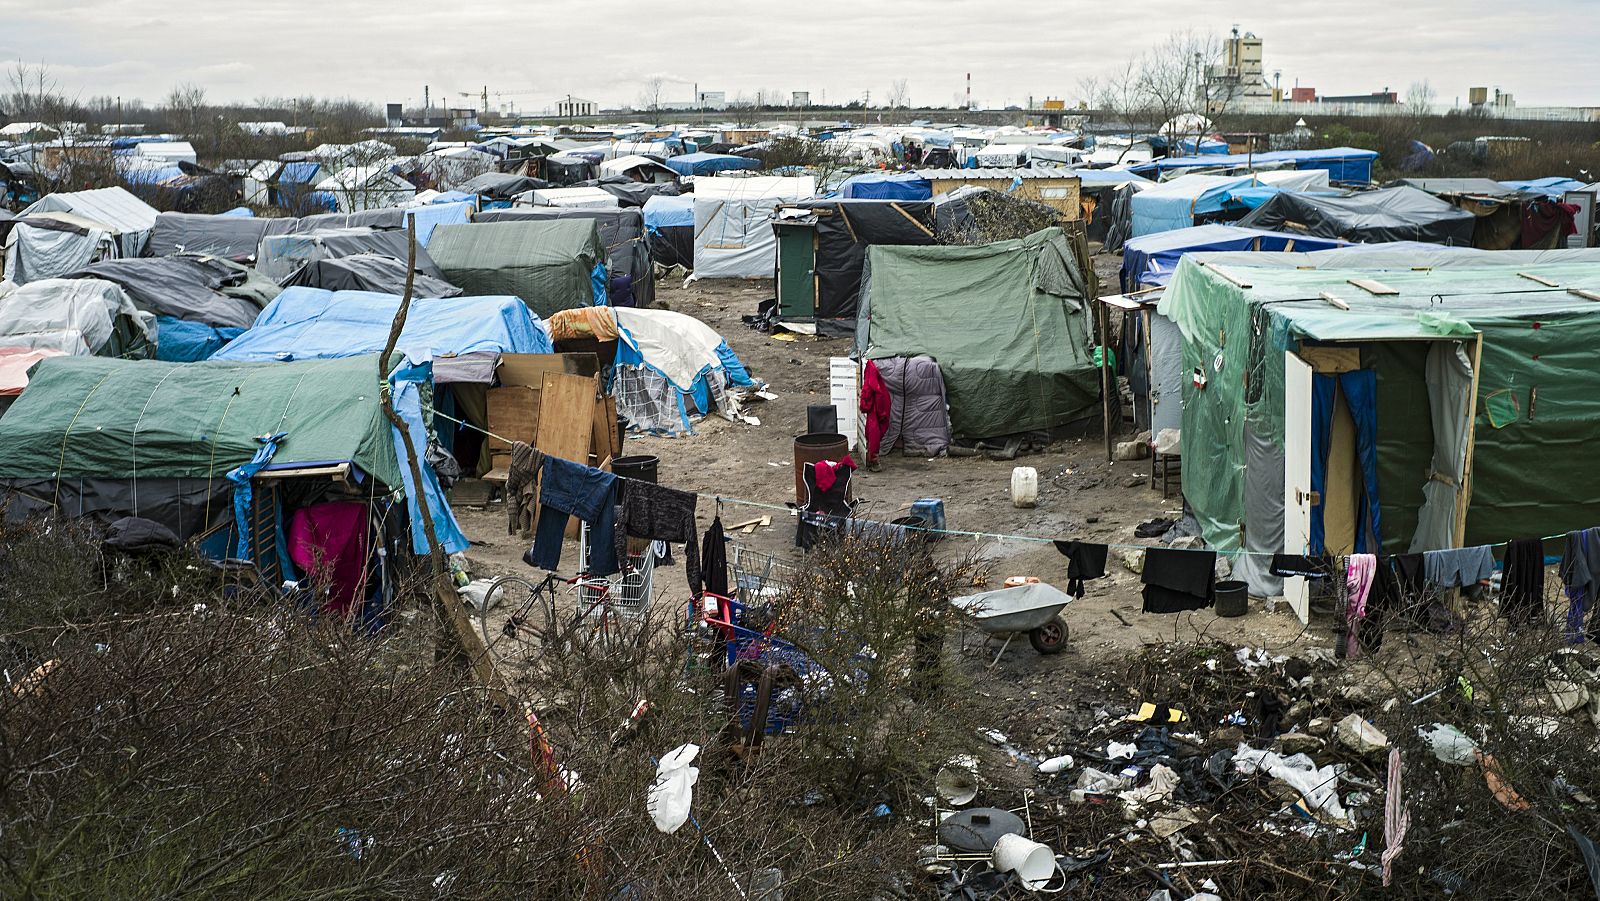  Europa abierta - Francia tiene voluntad de acoger a los refugiados de 'La jungla' de Calais - escuchar ahora